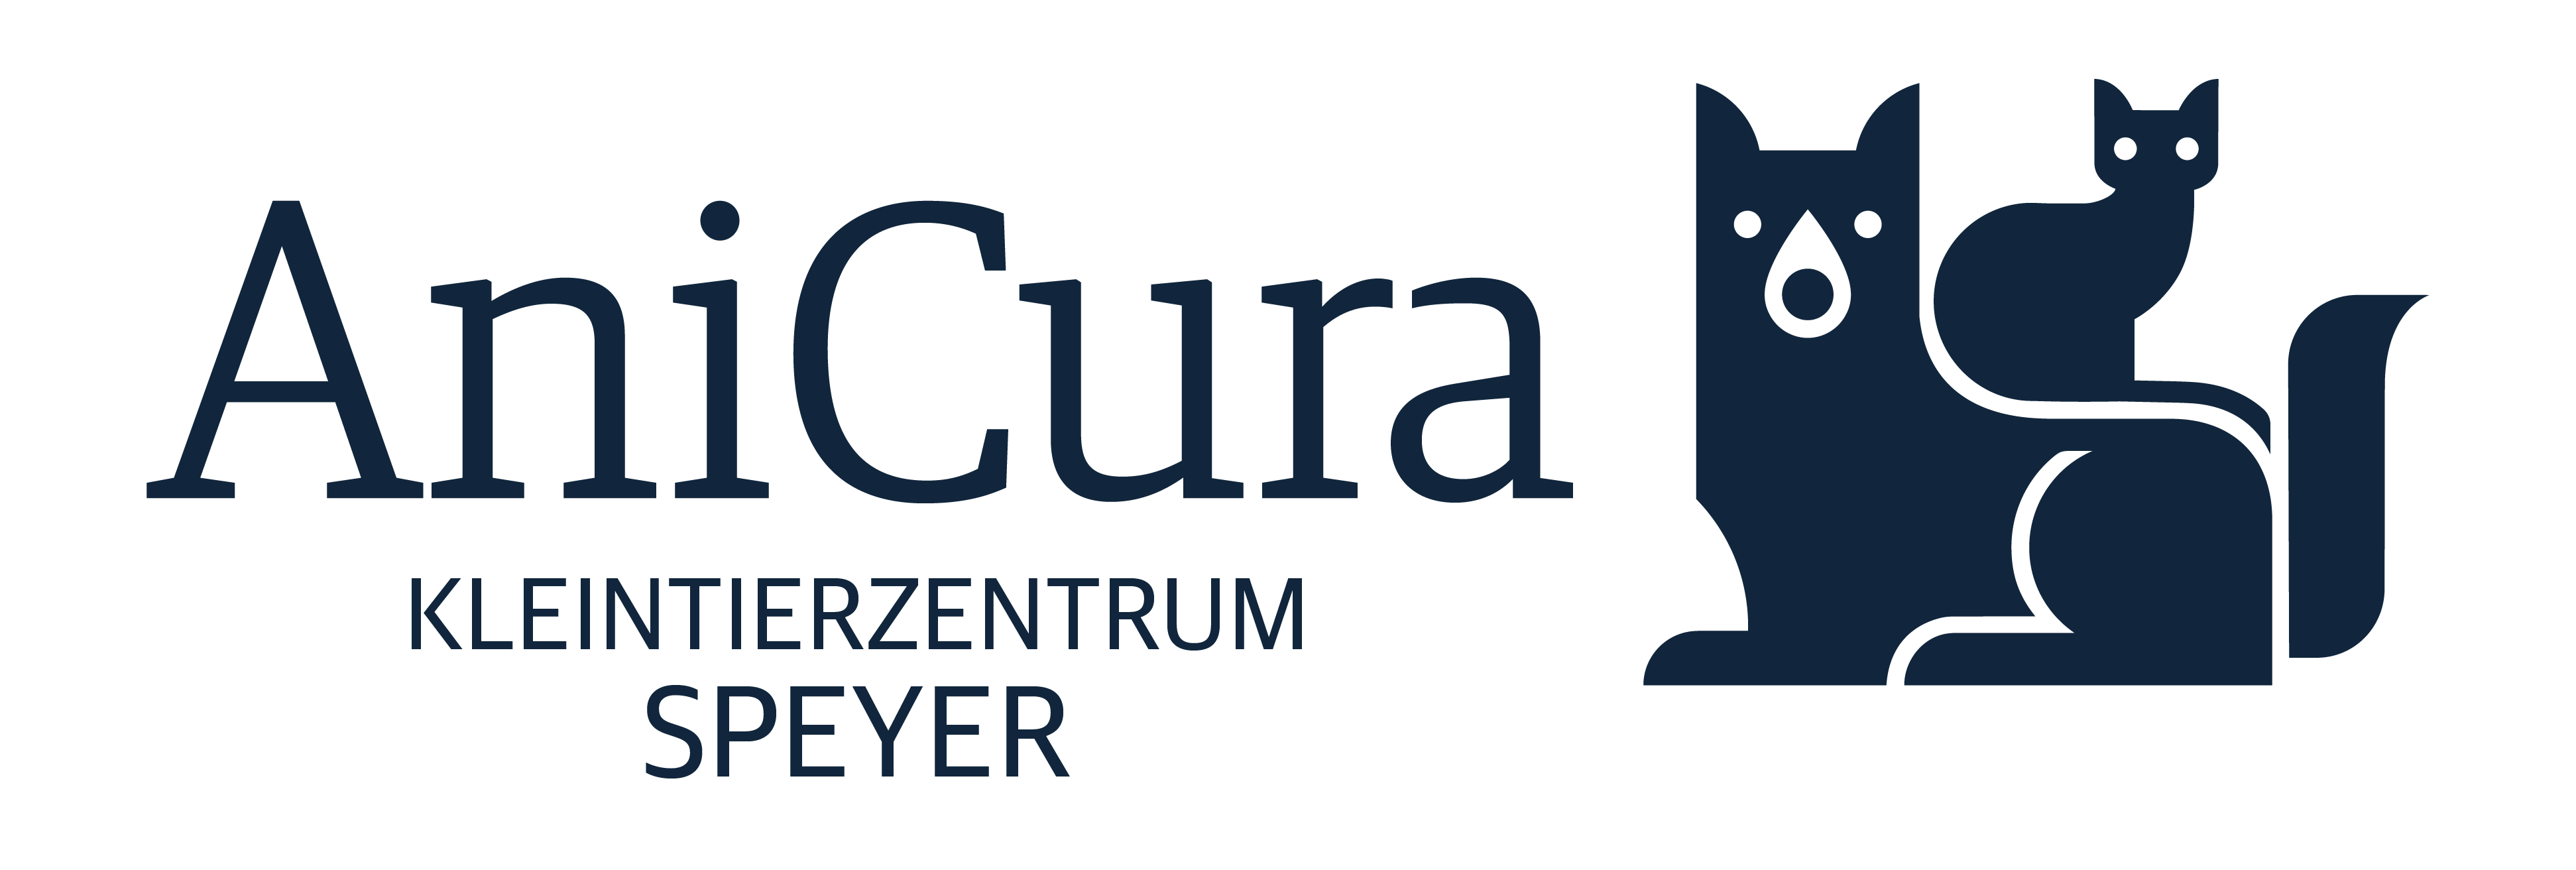 AniCura Kleintierzentrum Speyer logo